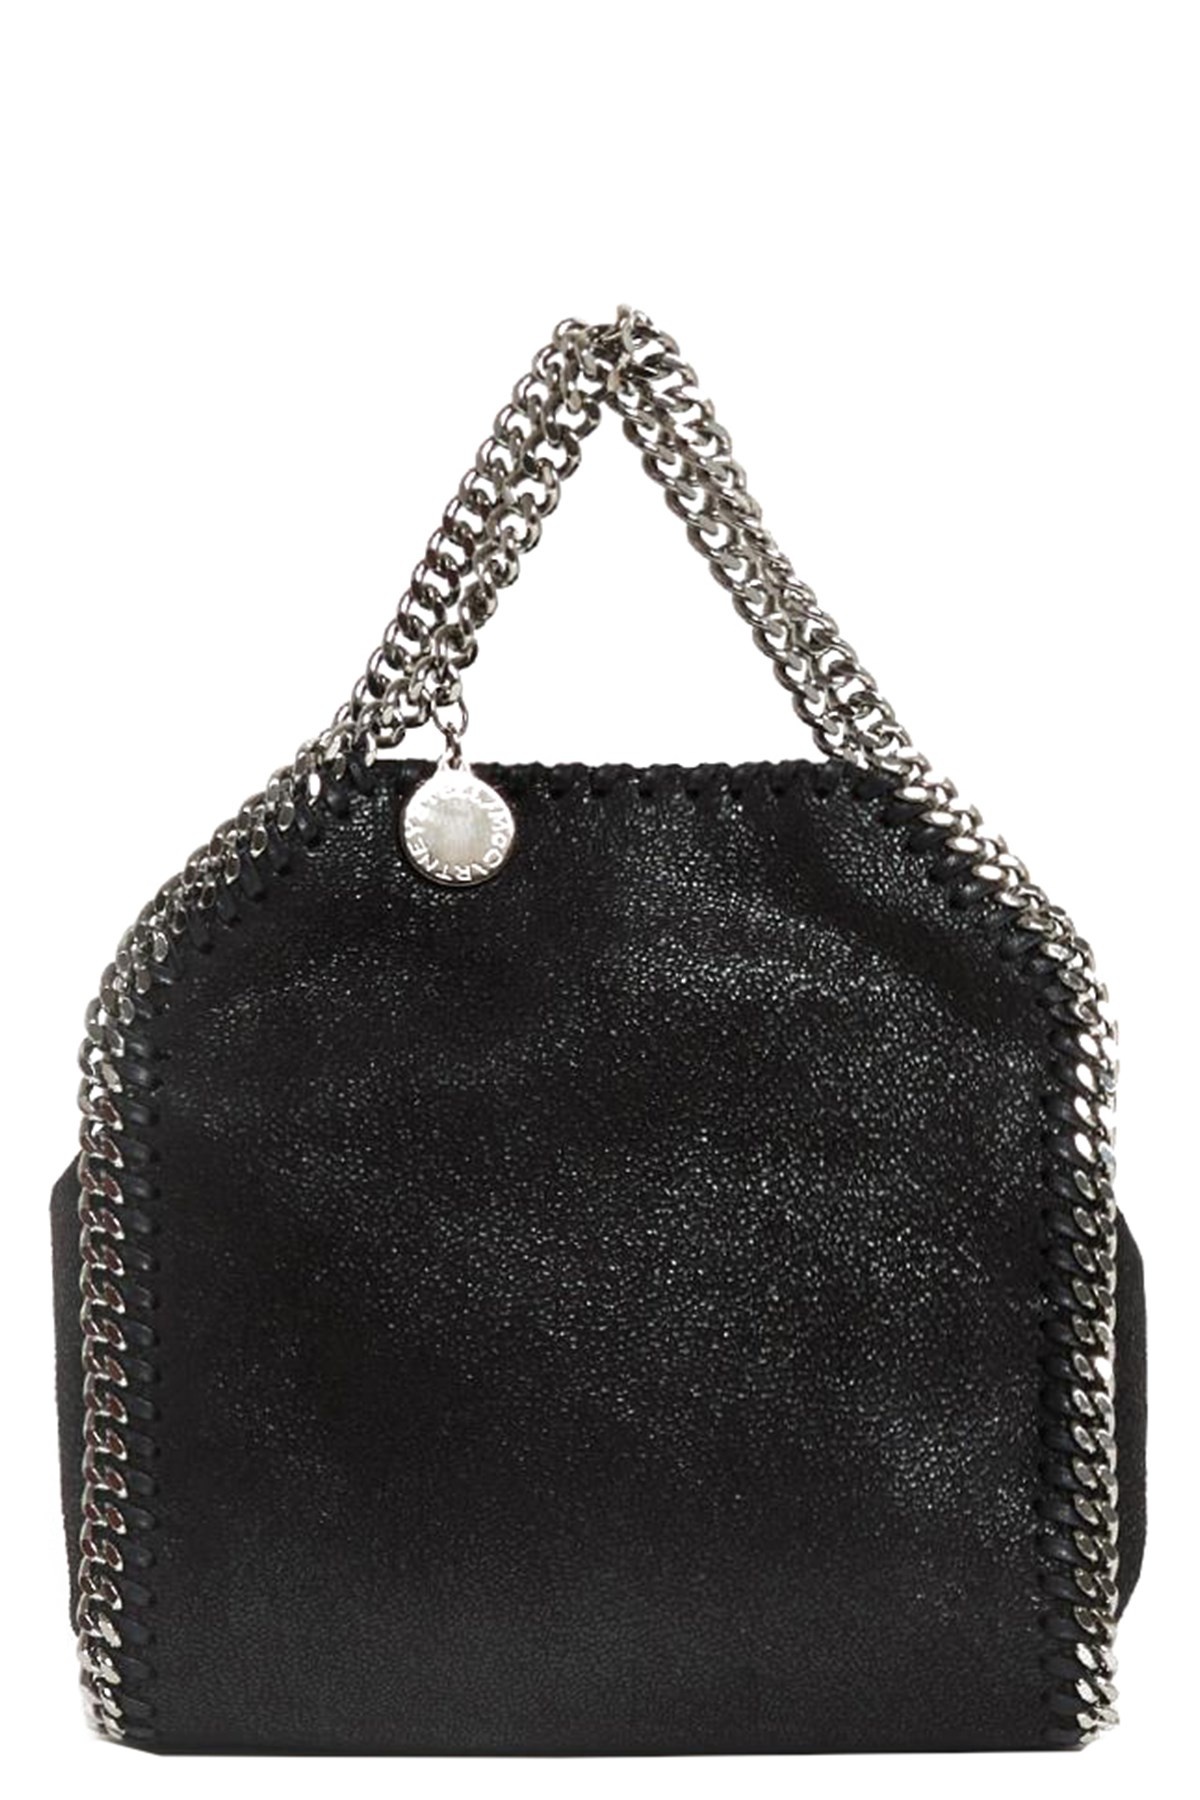 'Falabella Tiny Tote’ handbag - 1